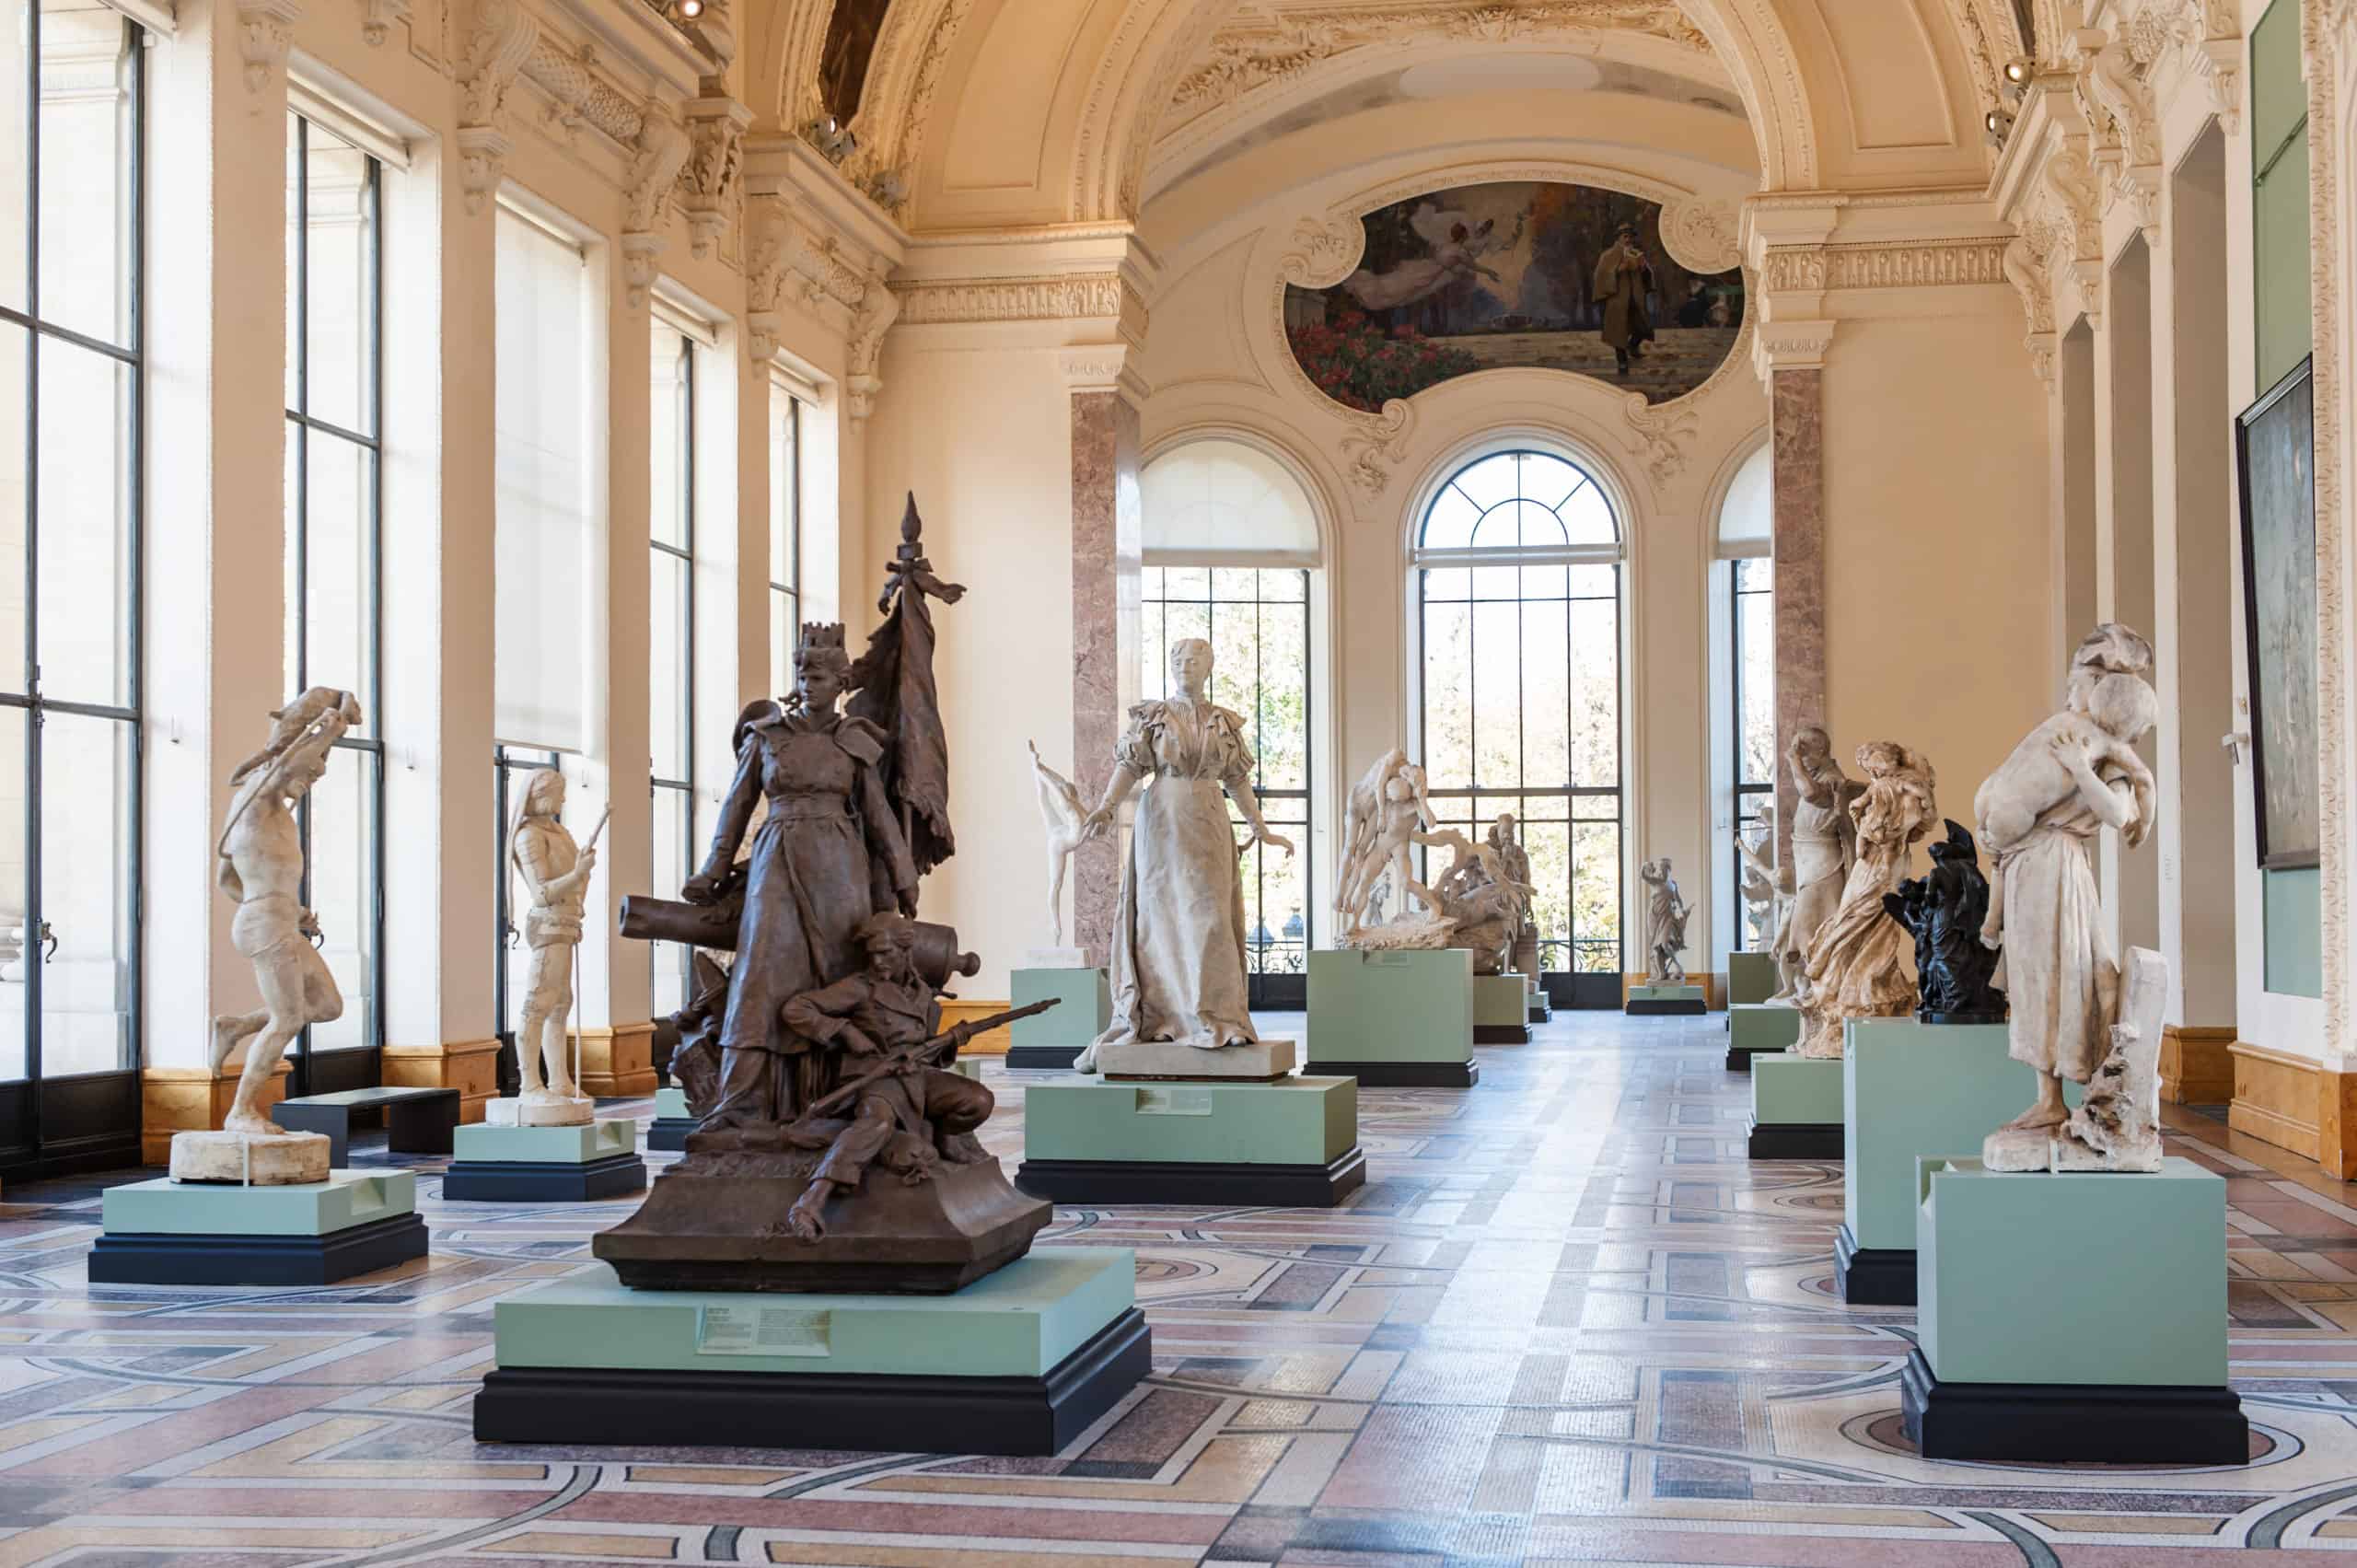 Galerie des sculptures at the Petit Palais.